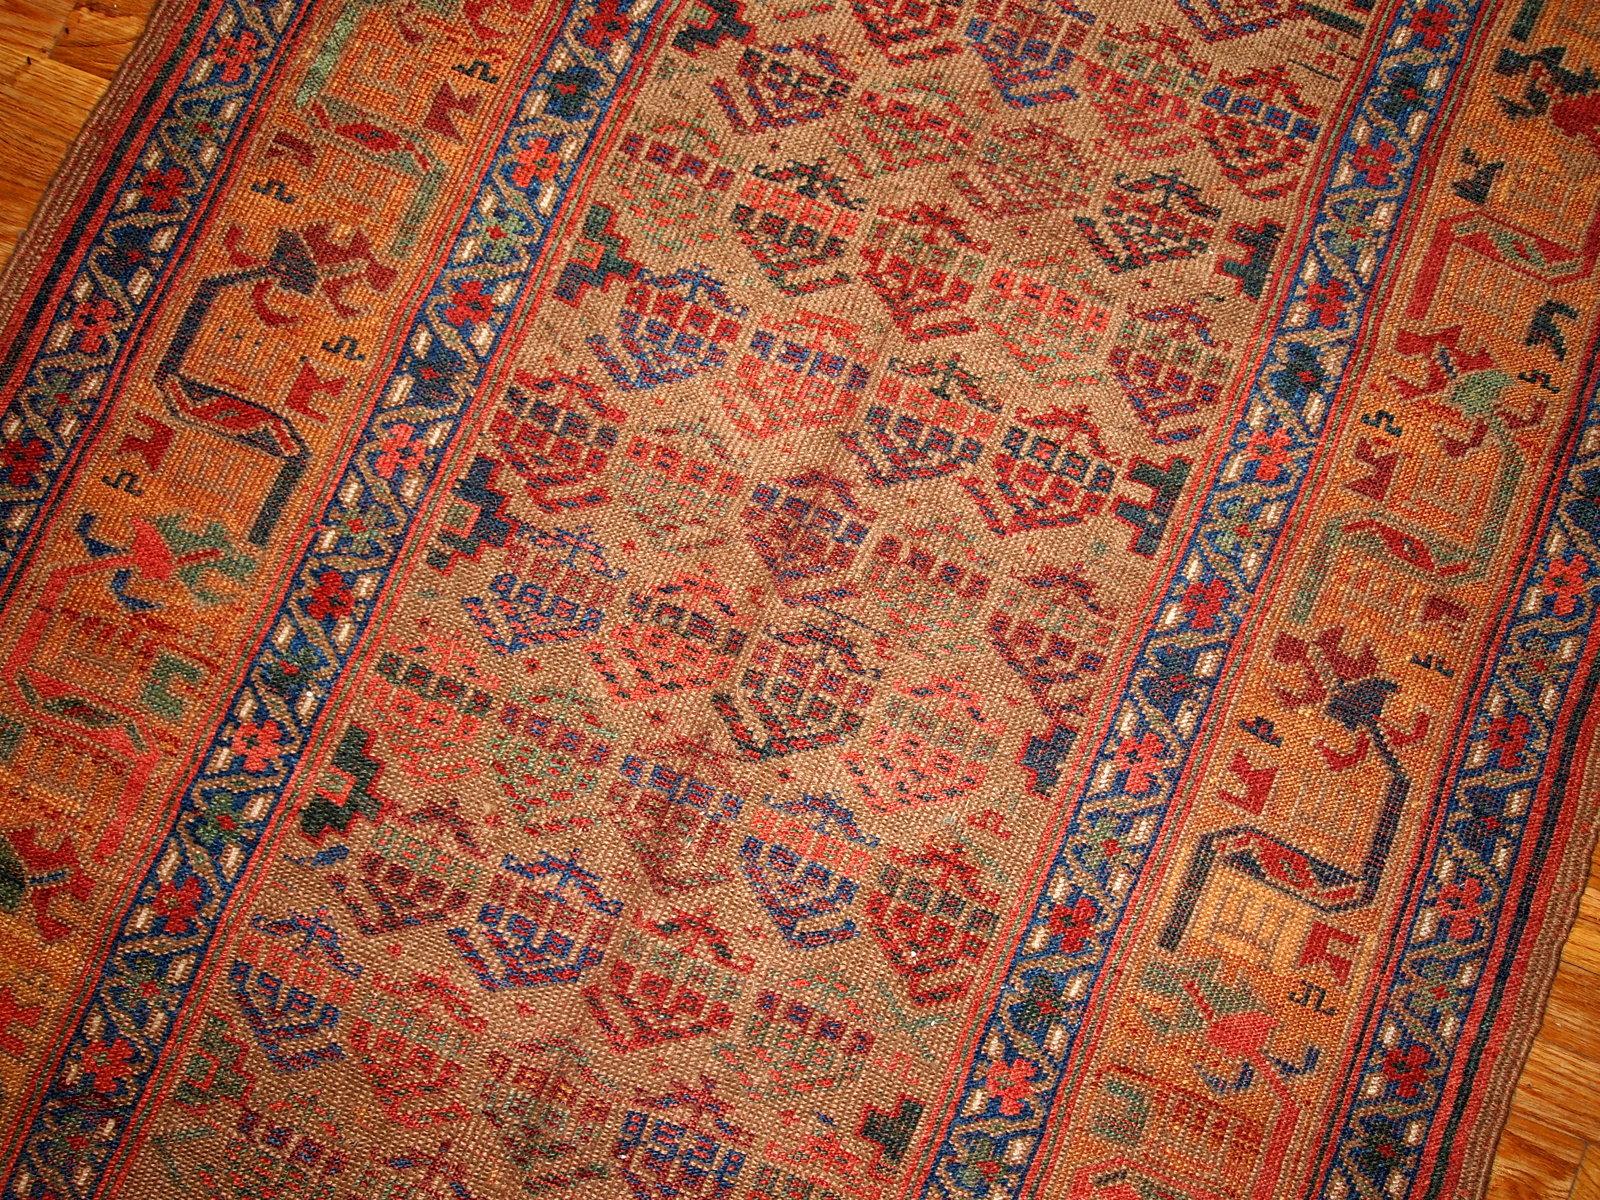 Alfombra antigua de estilo kurdo de diseño tradicional, en tonos verde oliva y amarillo. La alfombra es de finales del siglo XIX, en buen estado.